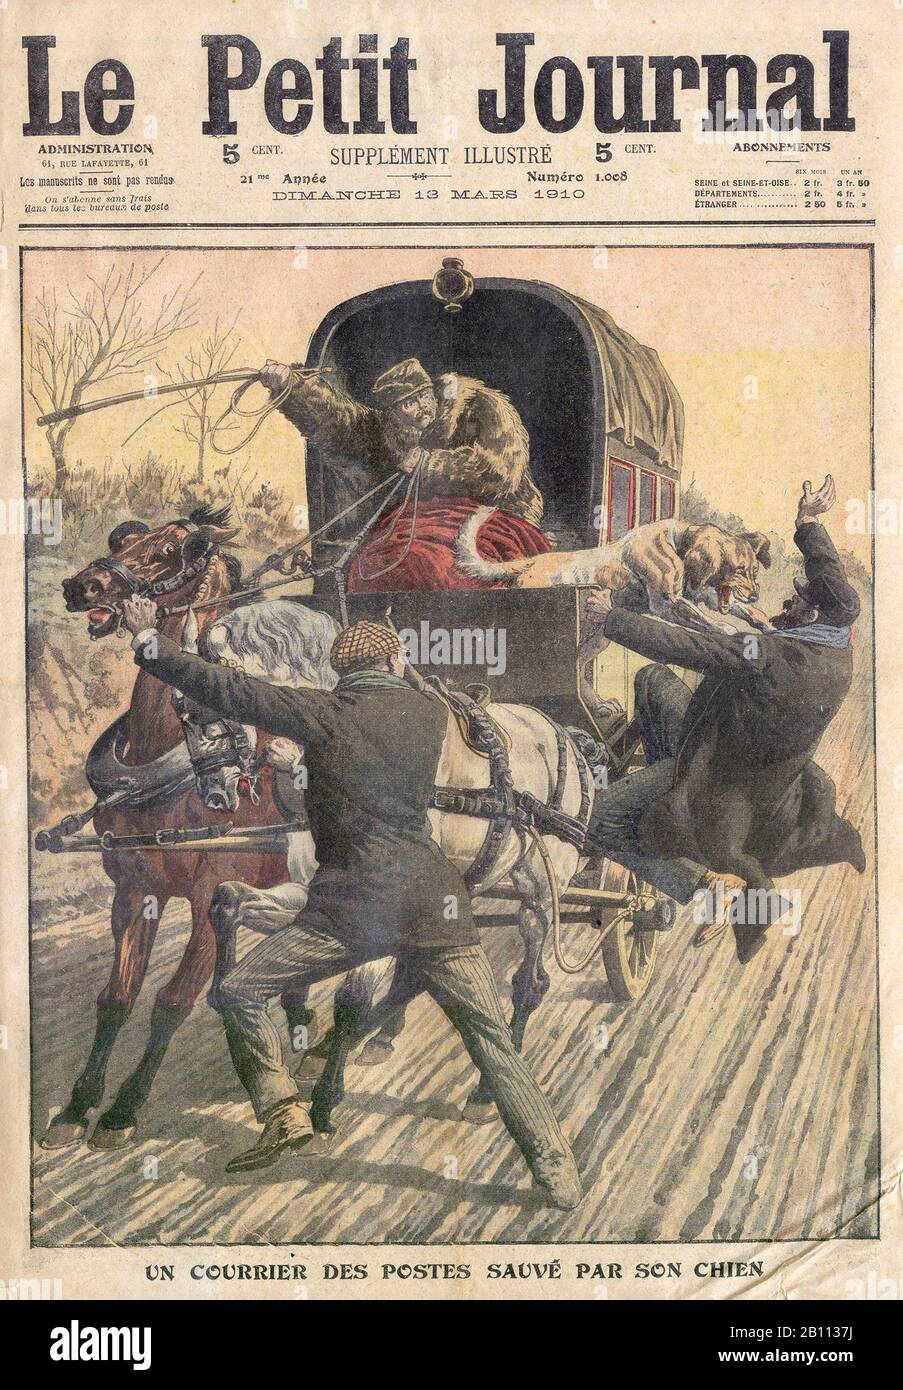 UN COURRIER des POSTES SAUVÉ PAR SON CHIEN - EINE VON SEINEM HUND RETTETE POST - In der französischen Illustrierten Zeitung "Le Petit Journal" - 1910 Stockfoto